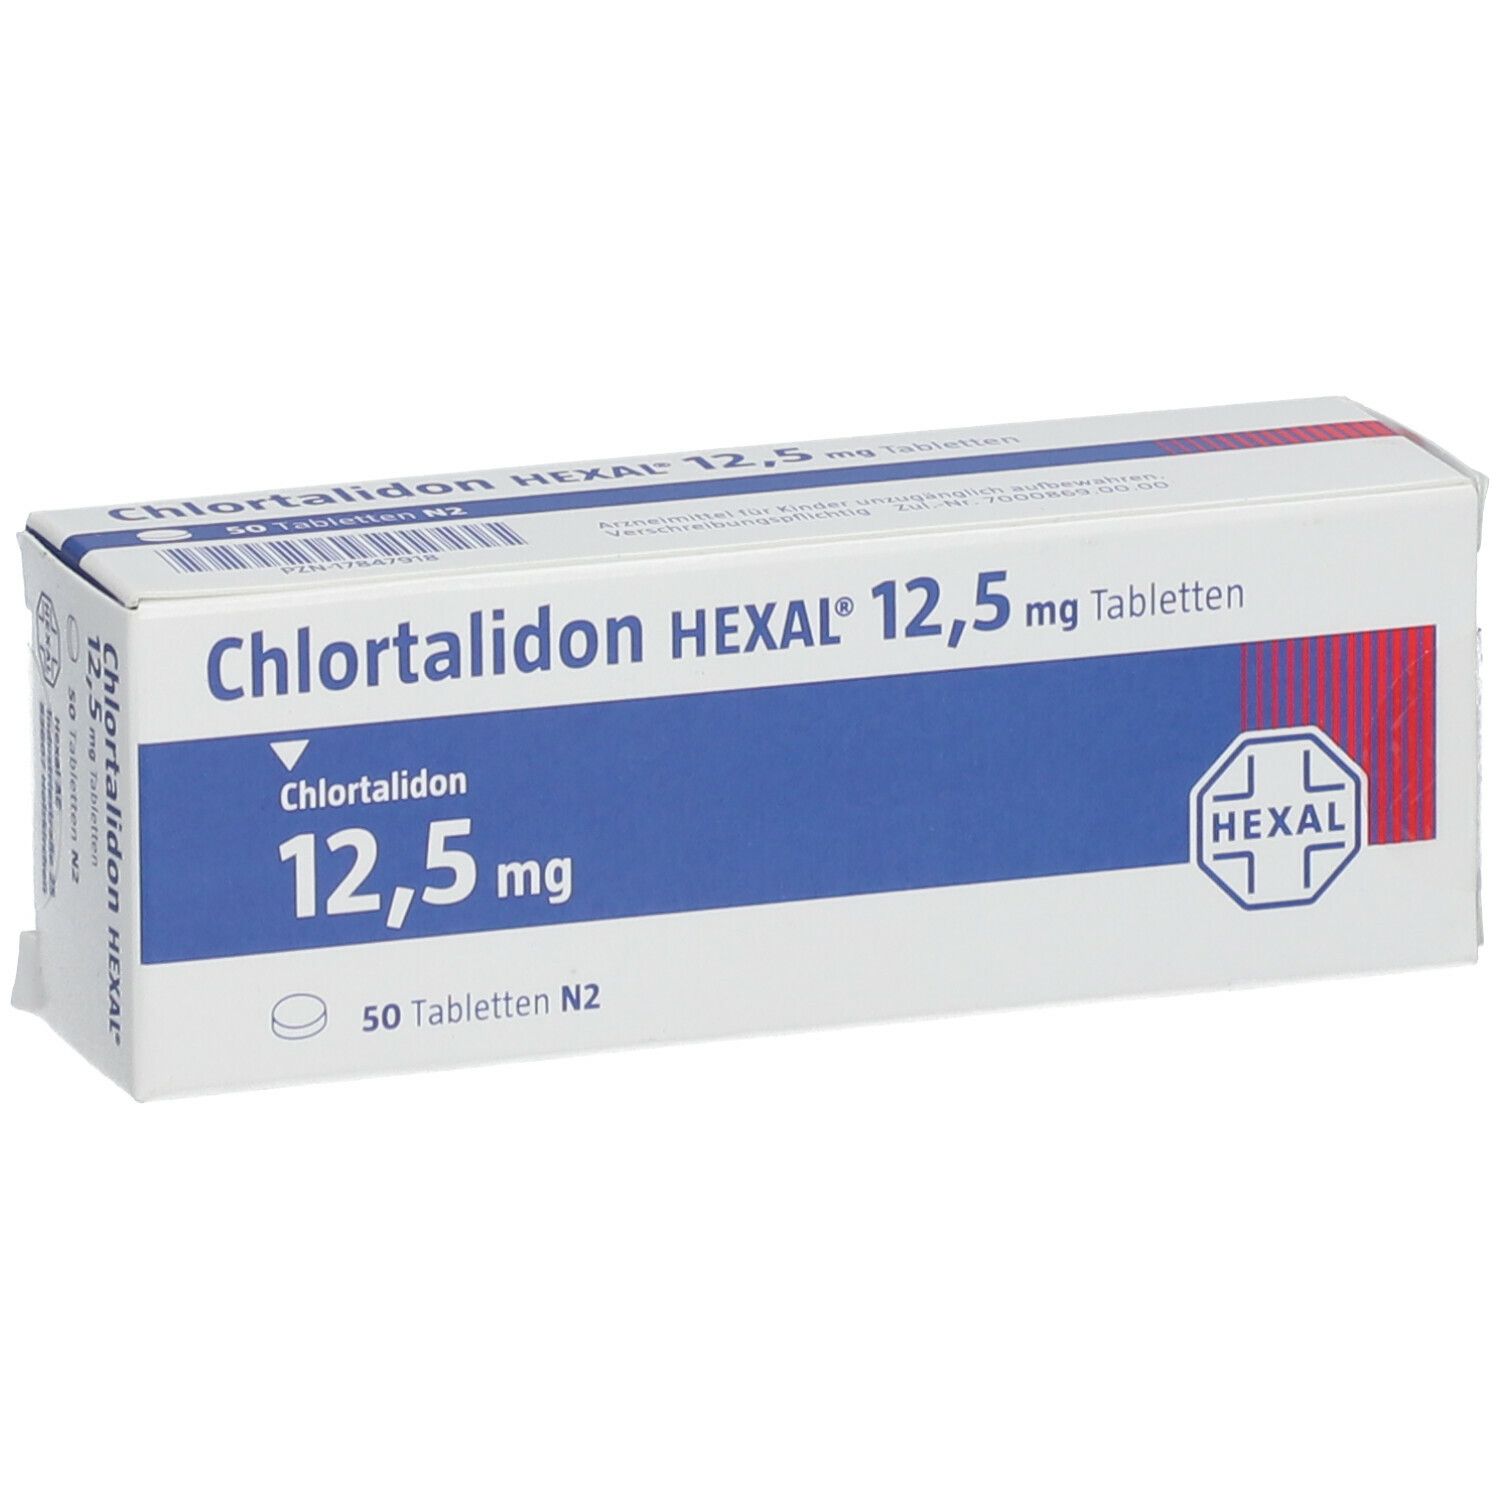 CHLORTALIDON HEXAL 12,5 mg Tabletten